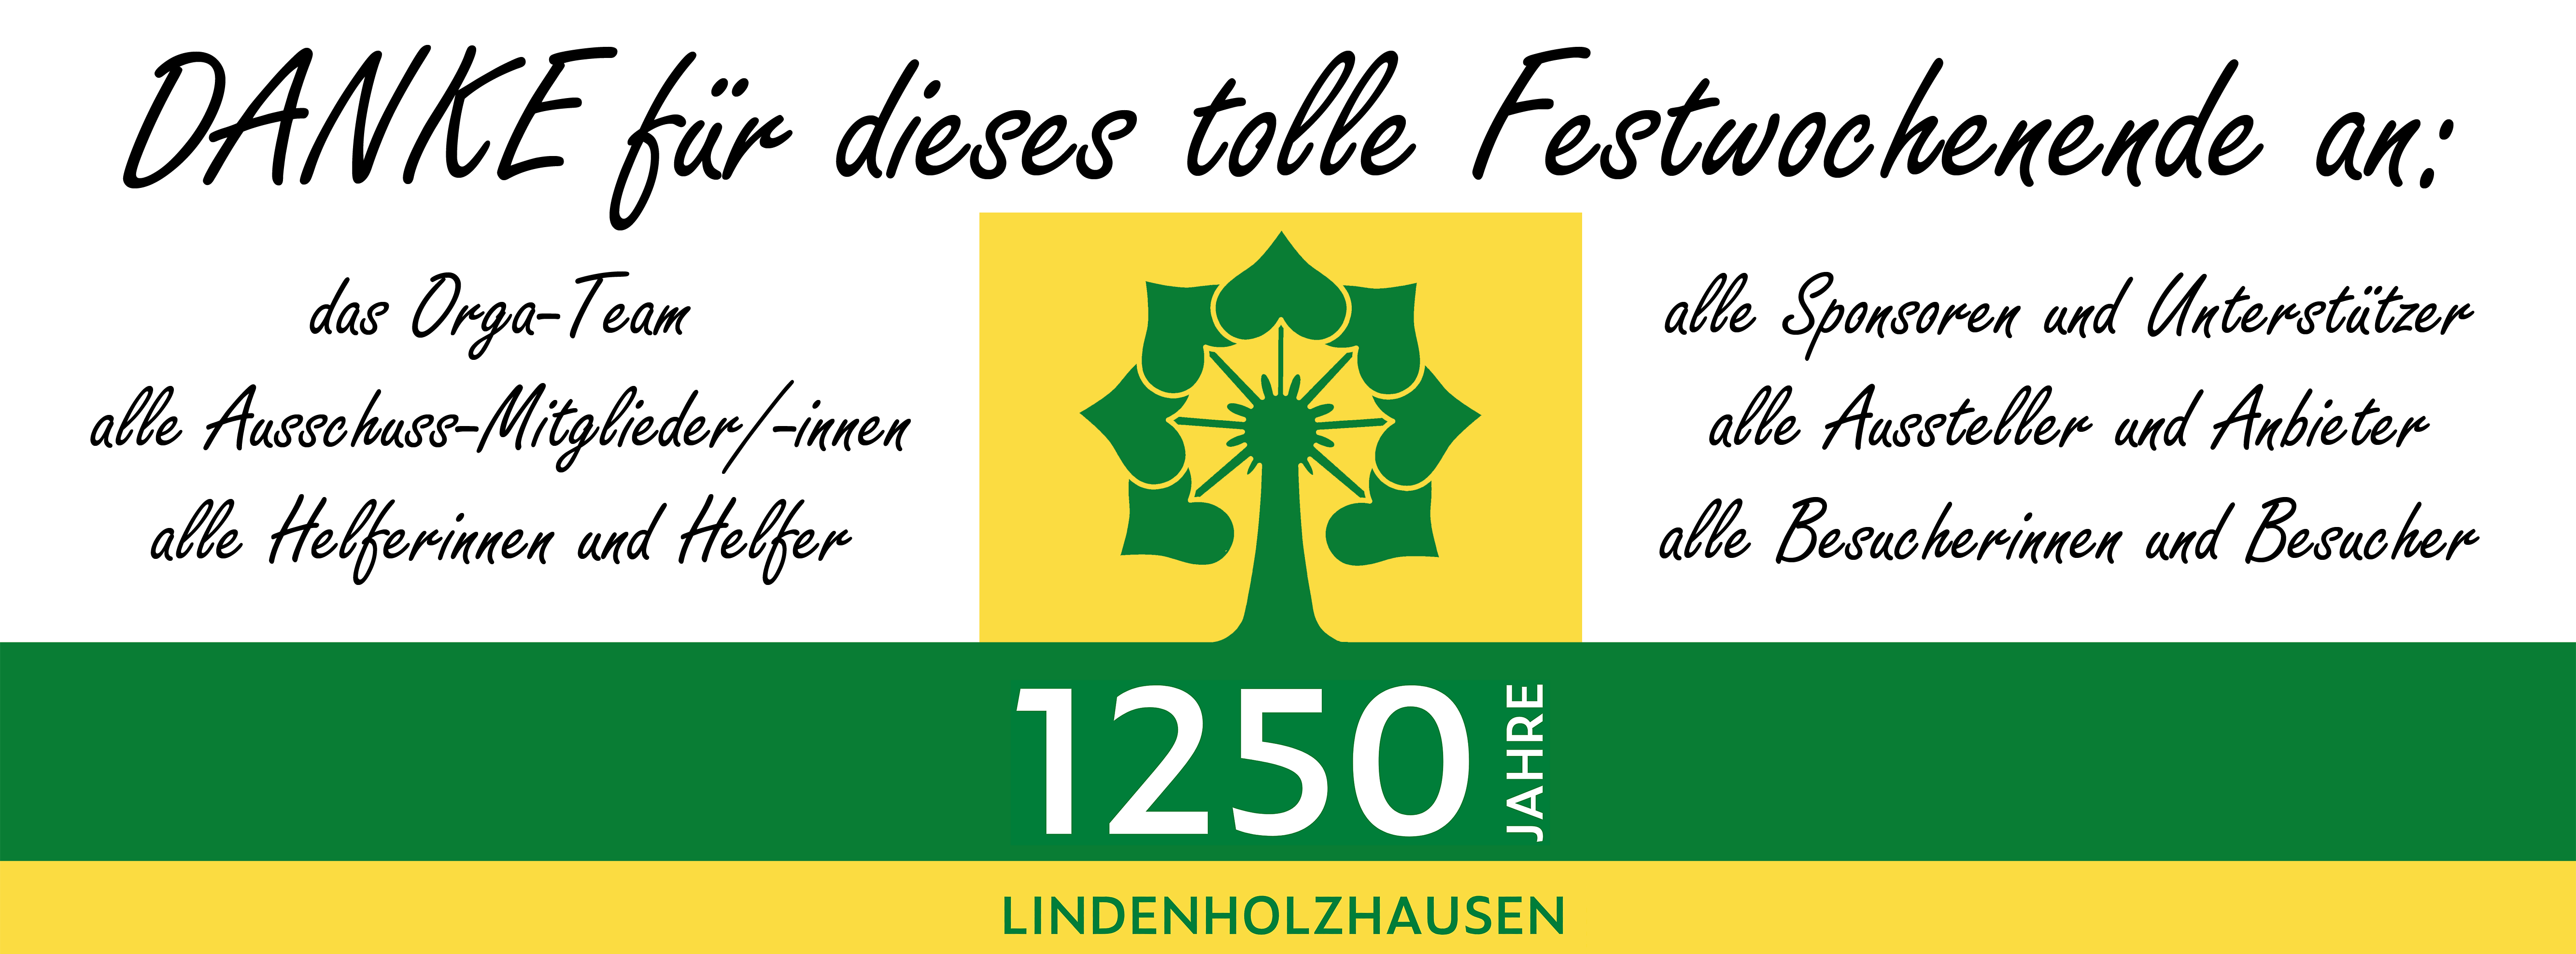 1250 Jahre Lindenholzhausen - Danke